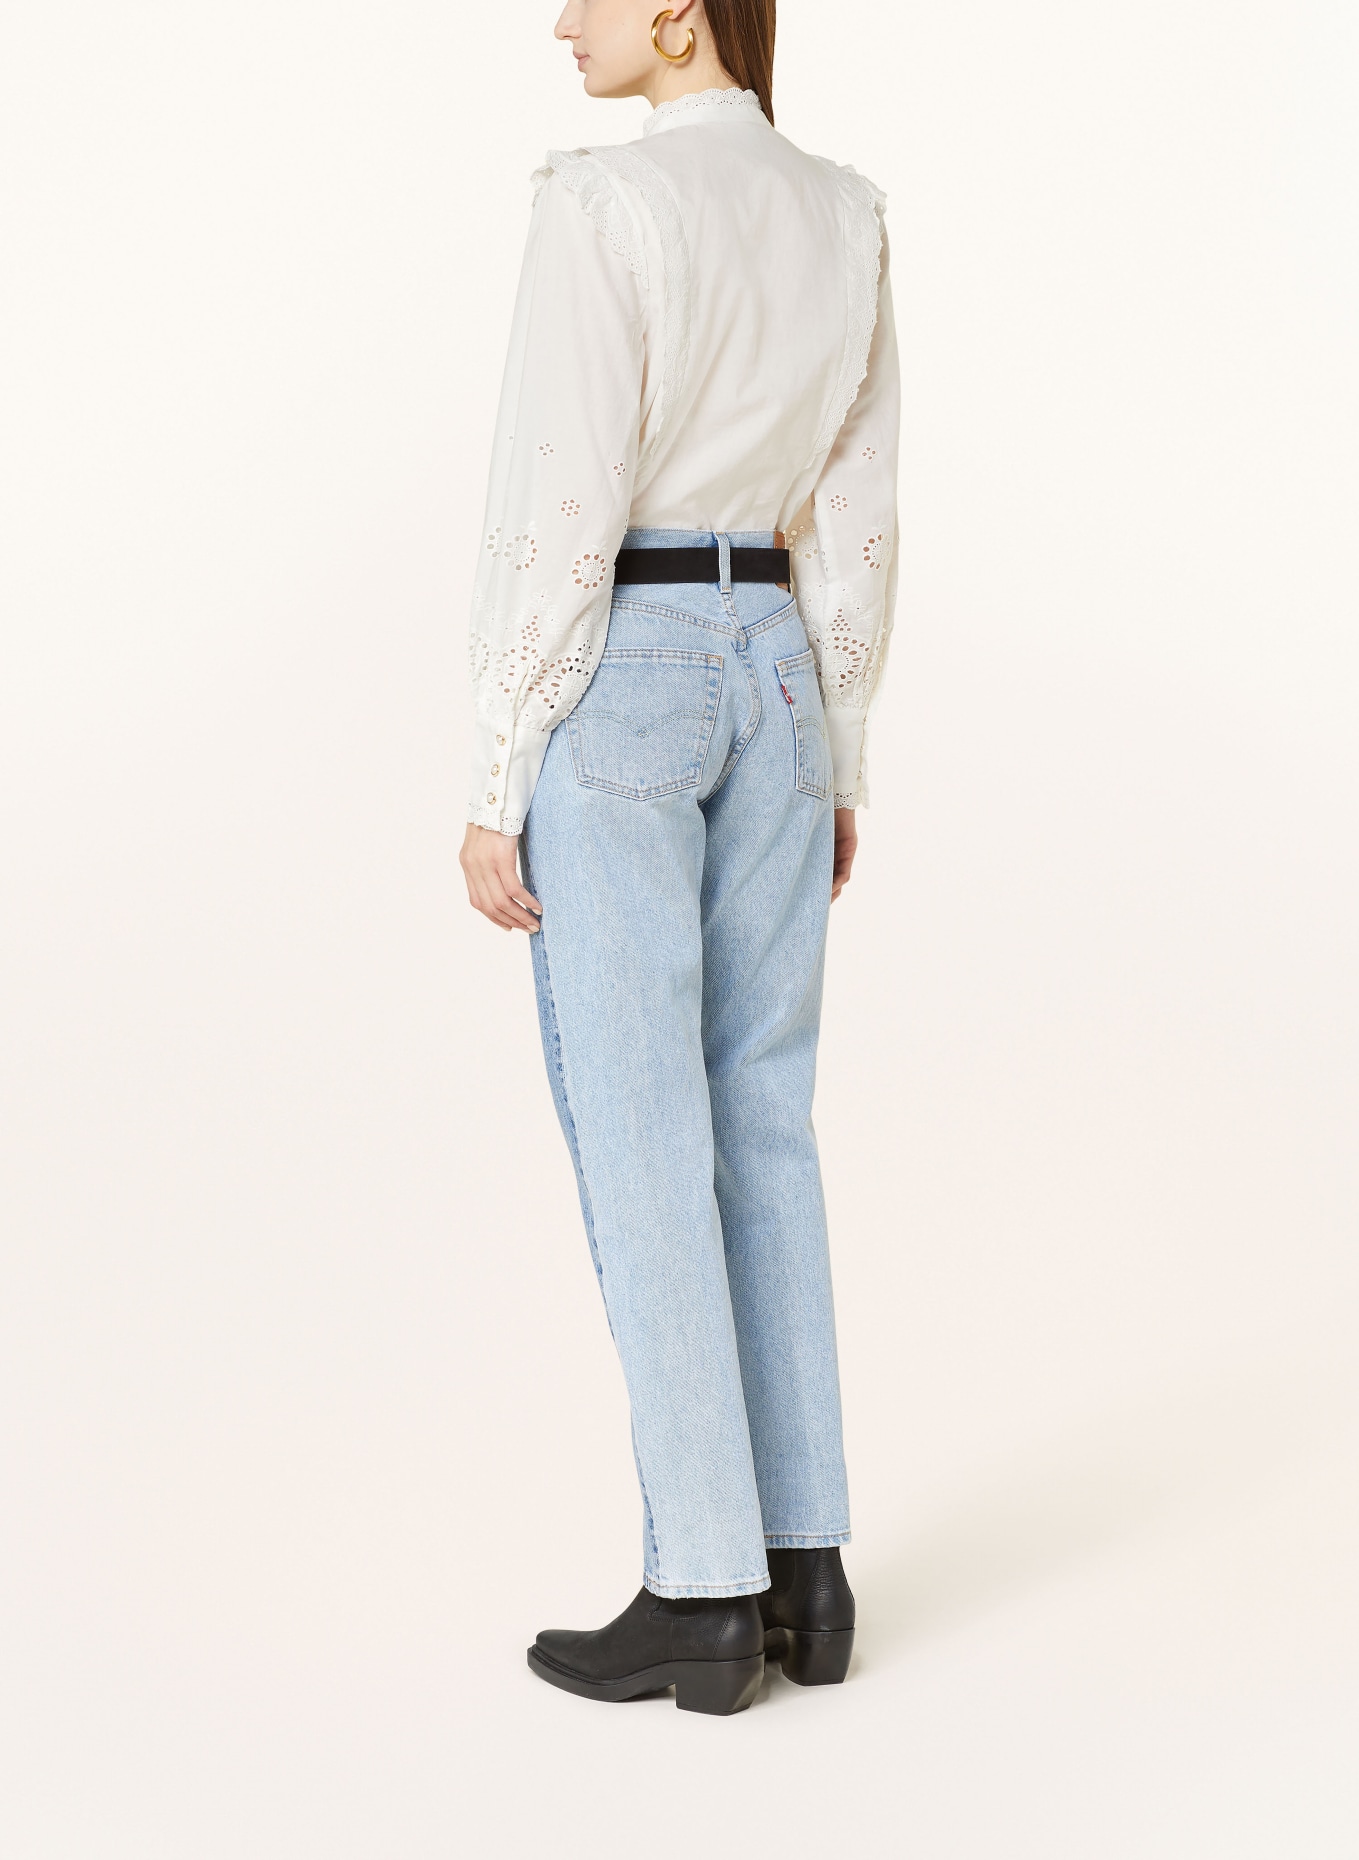 ROUGE VILA Bluse mit Spitze, Farbe: WEISS (Bild 3)